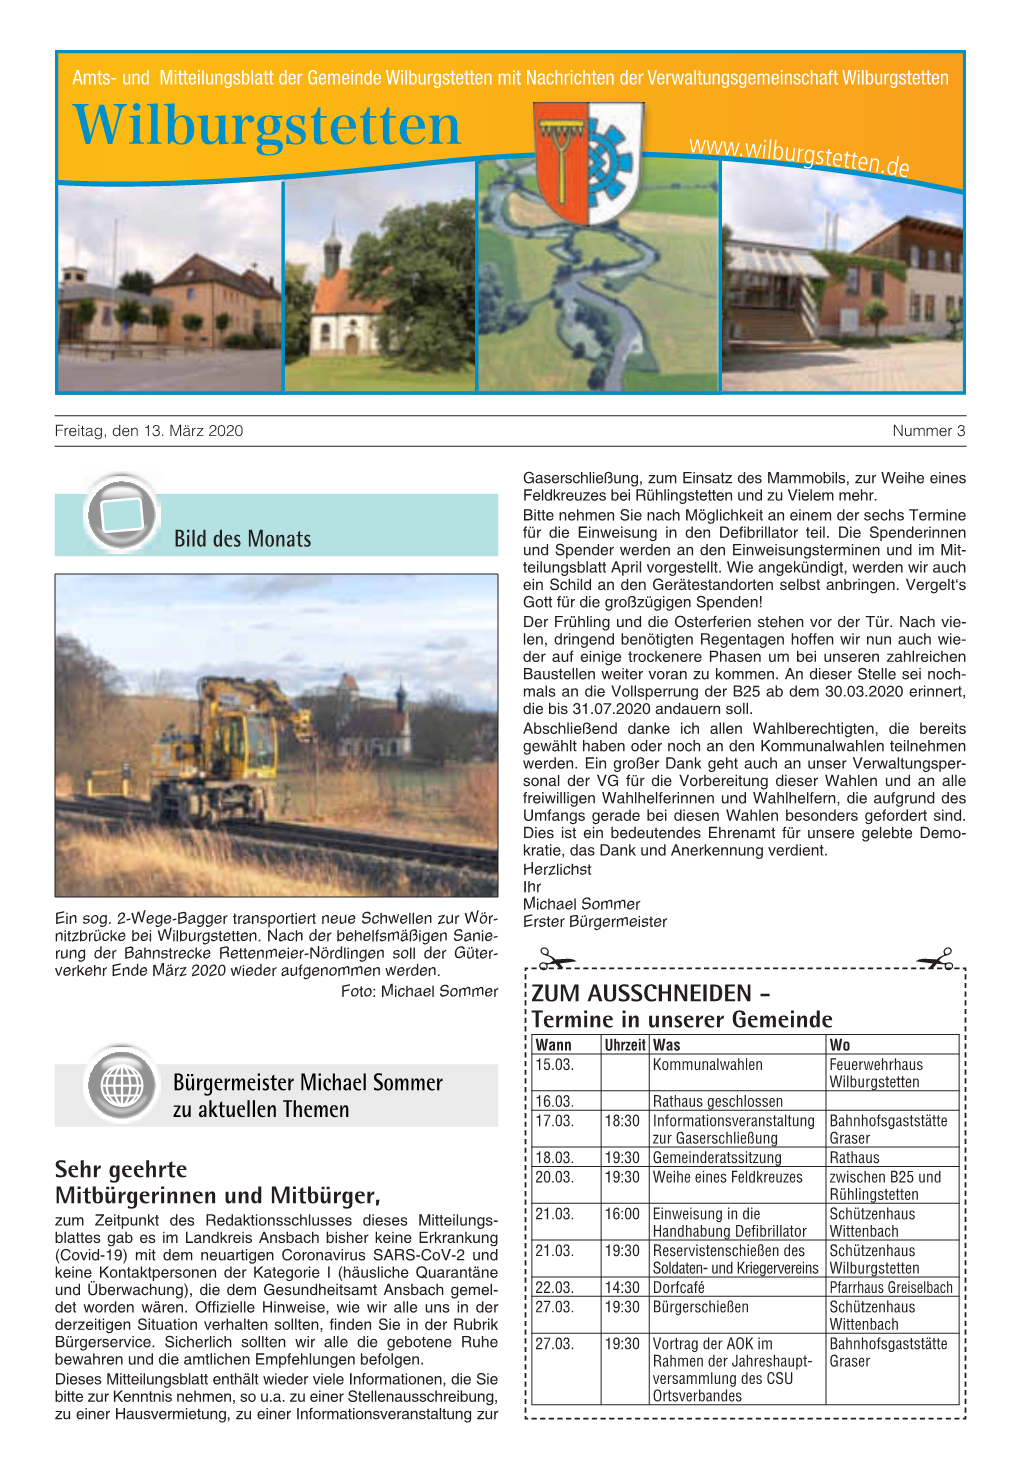 Mitteilungsblatt März 2020 (PDF-Datei)